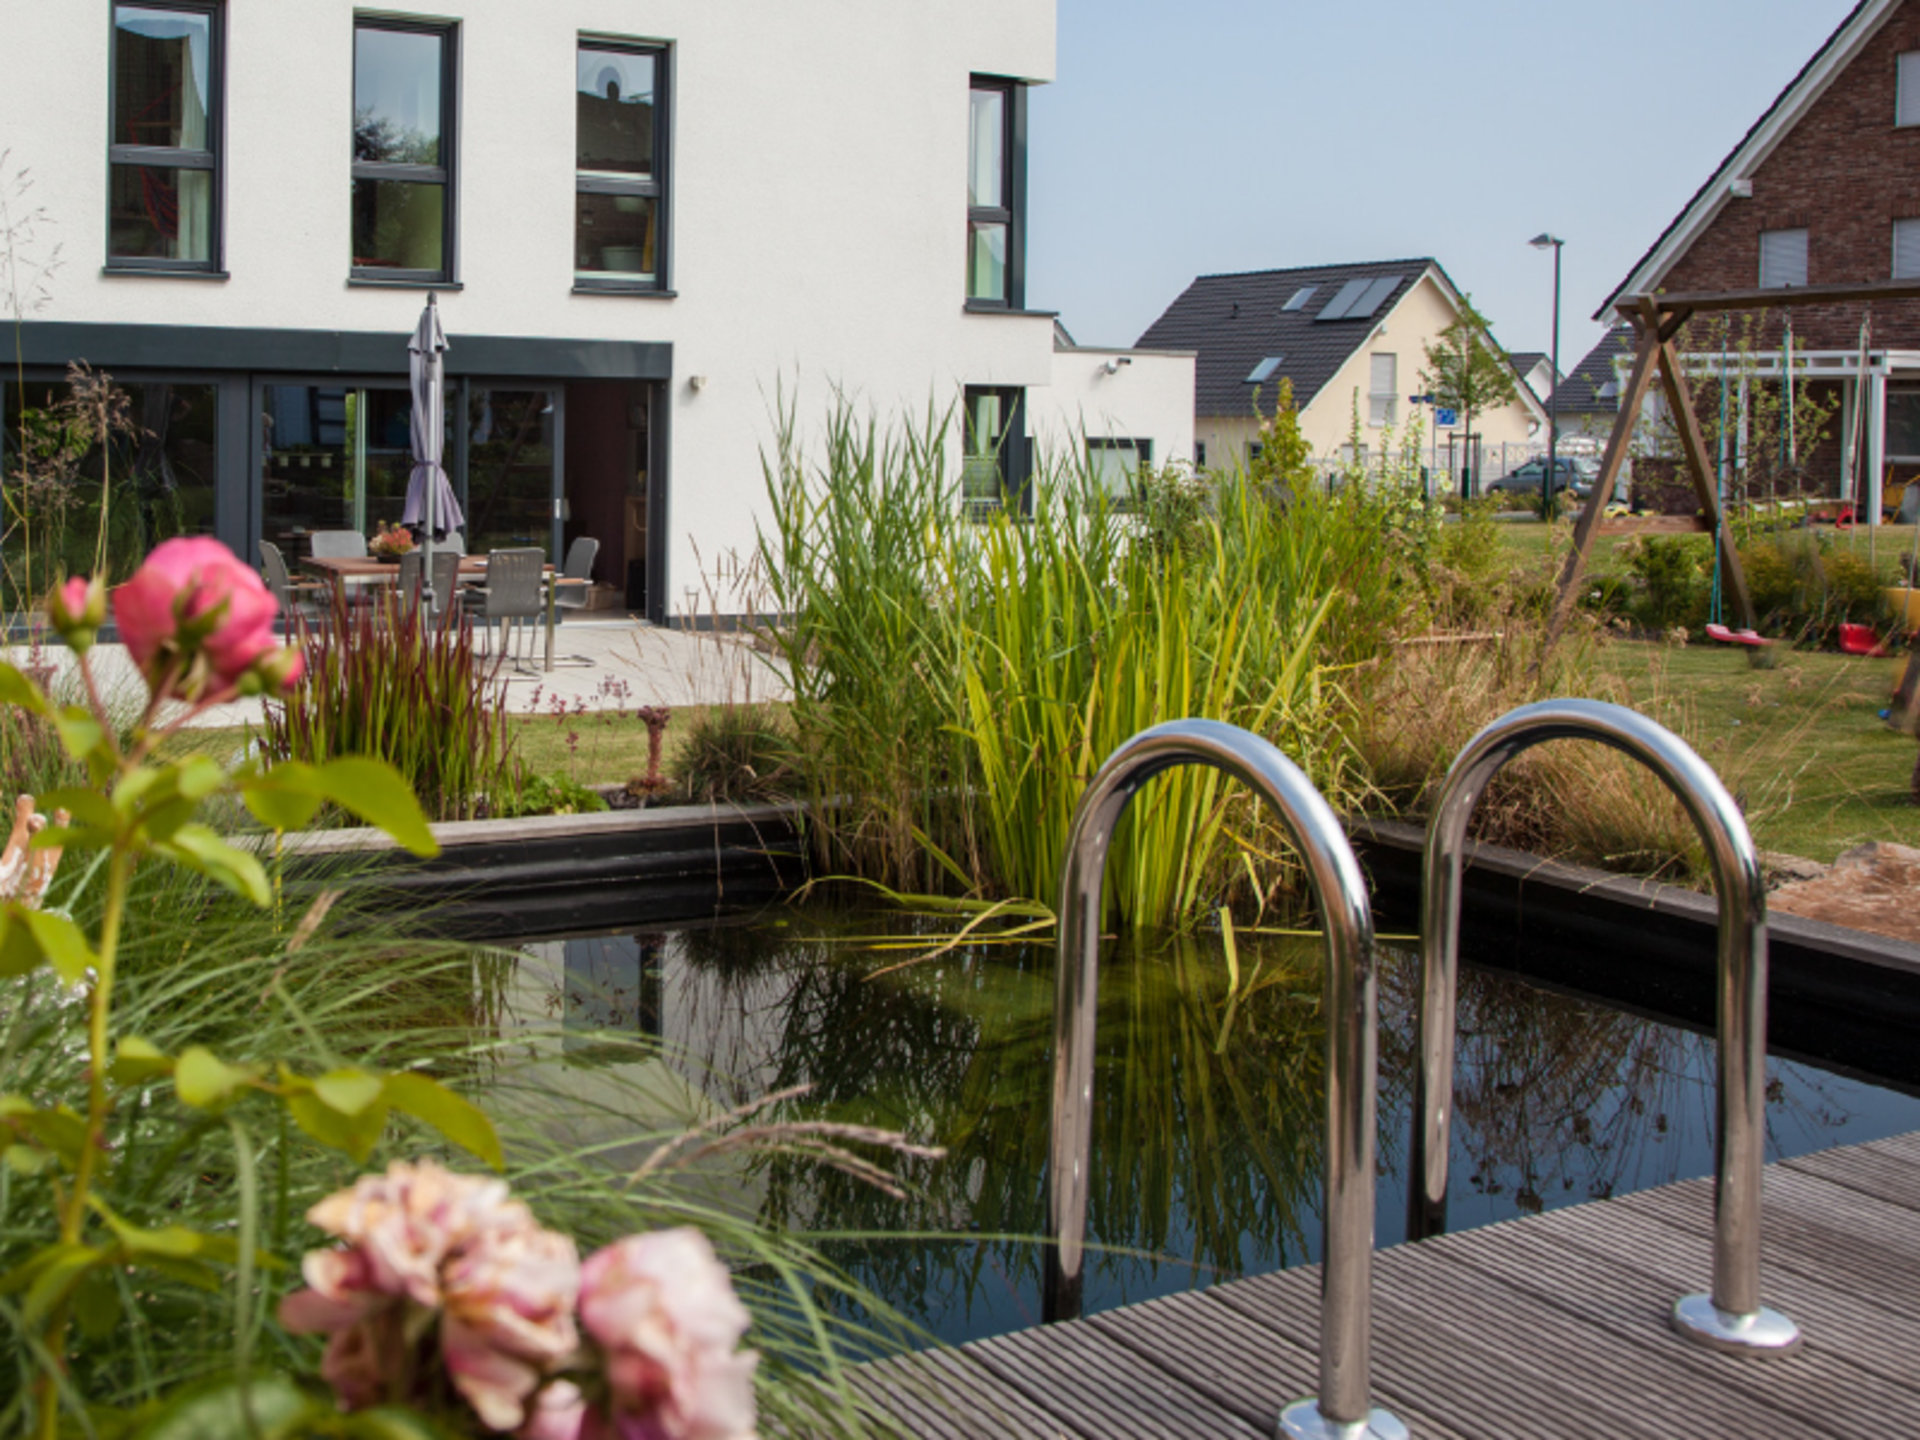 Haus Dietz verfügt über einen bepflanzten Schwimmteich, der im Sommer eine angenehme Abkühlung ermöglicht. (Foto: © BAUMEISTER-HAUS)